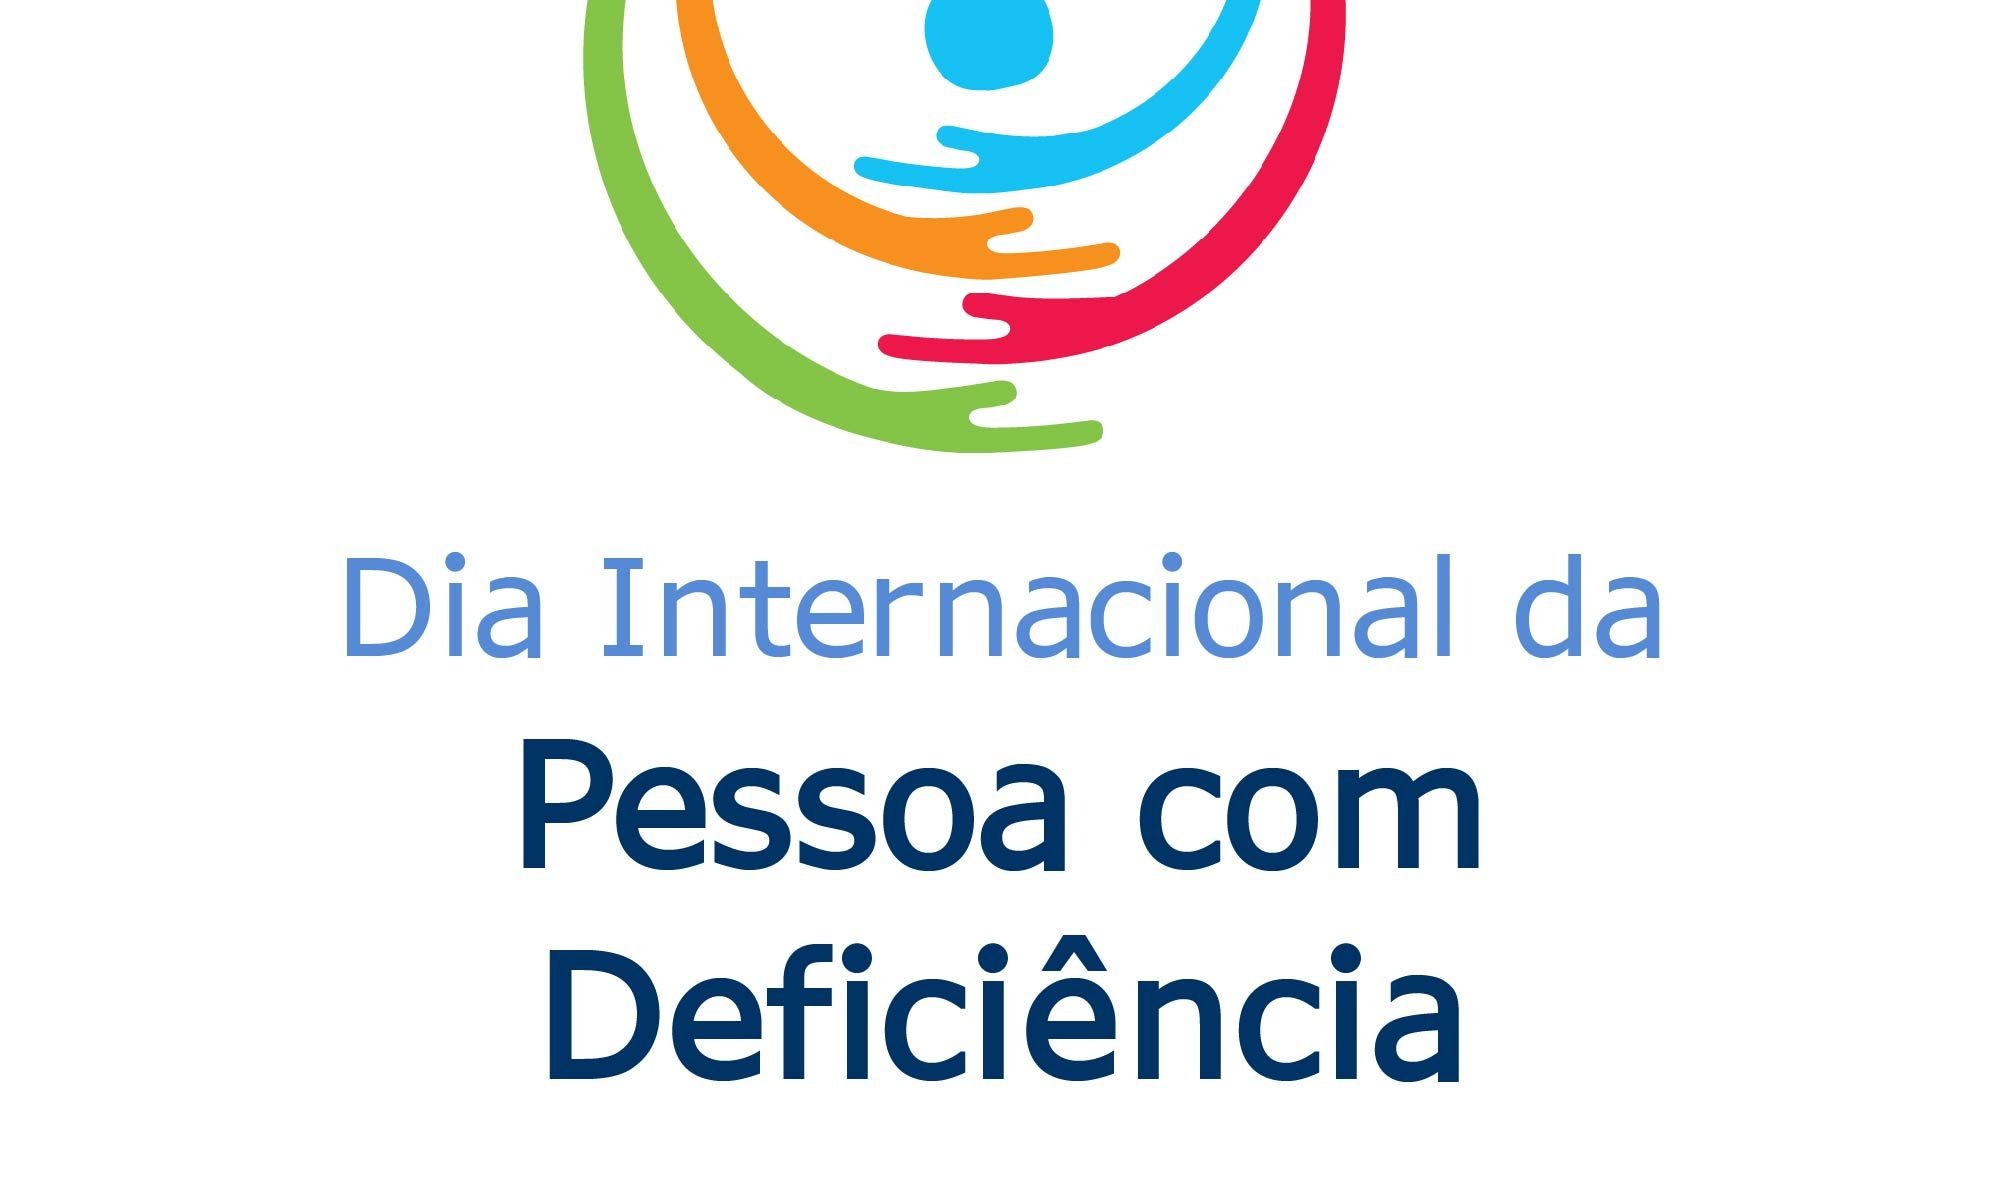 imagem de fundo branco com a logo da data. Está escrito: "03 de dezembro Dia Internacional da Pessoa com Deficiência" e há as logos da Retina Brasil e na Novarits